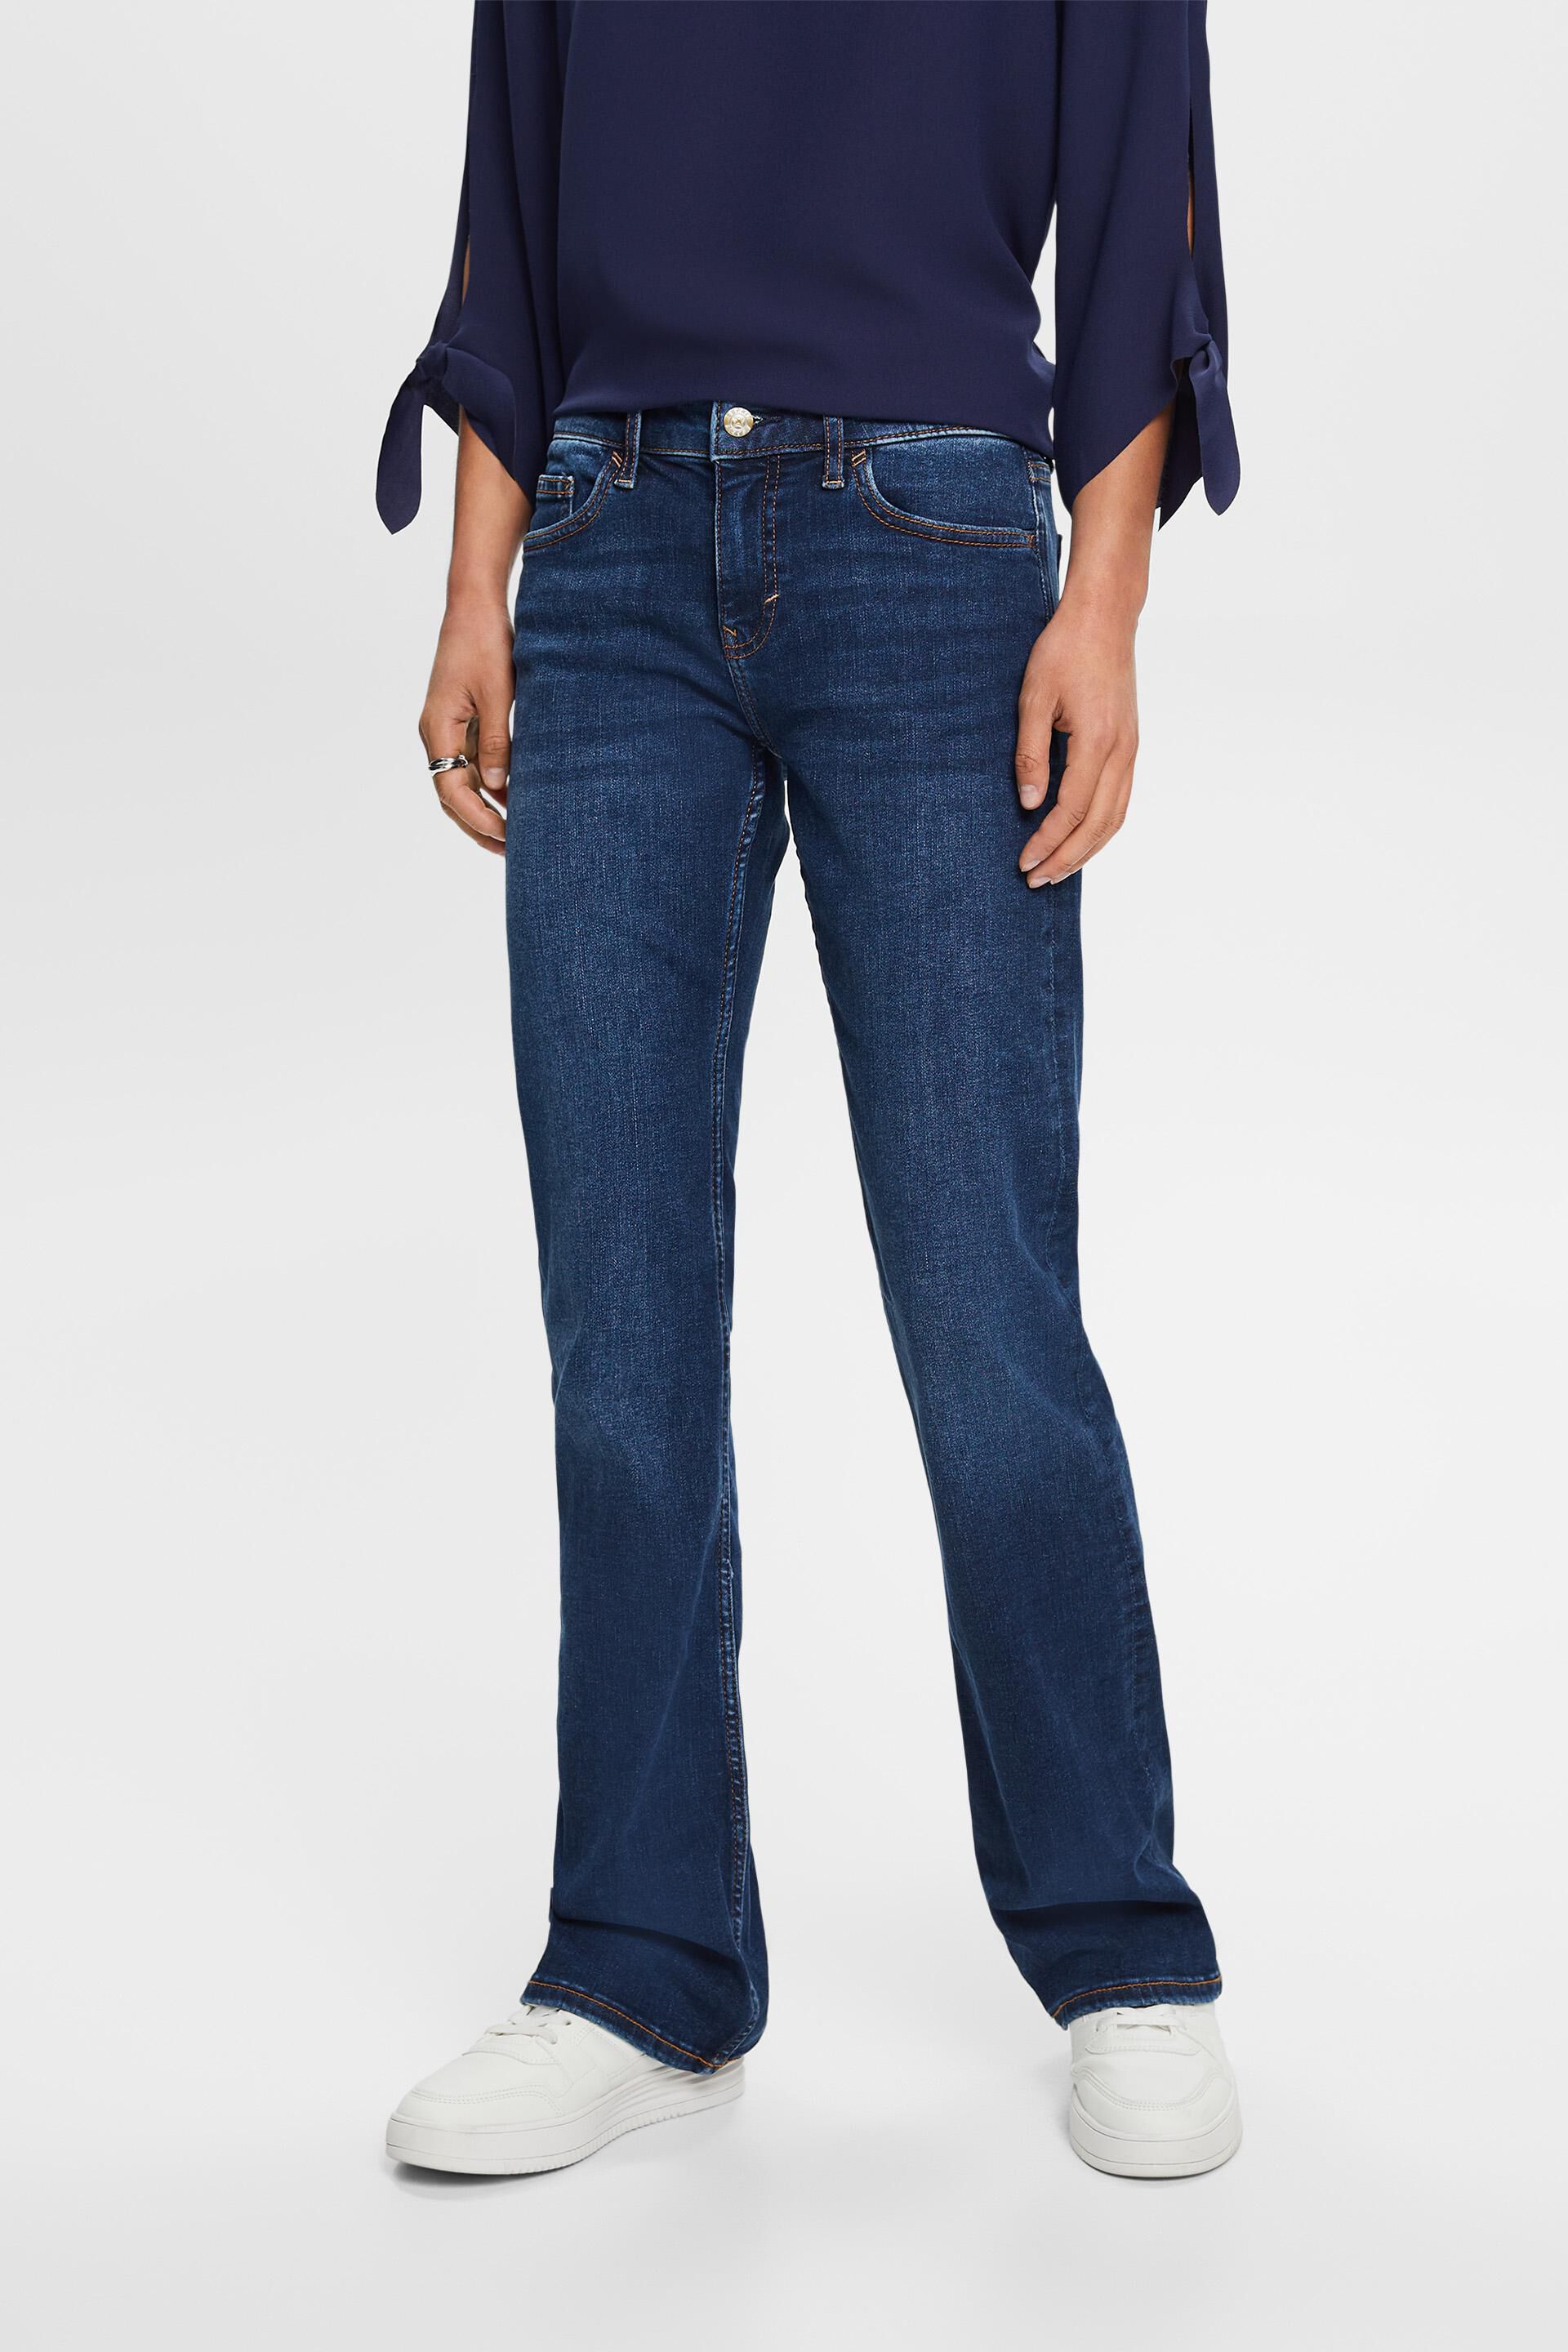 Esprit jeans Mid-rise bootcut